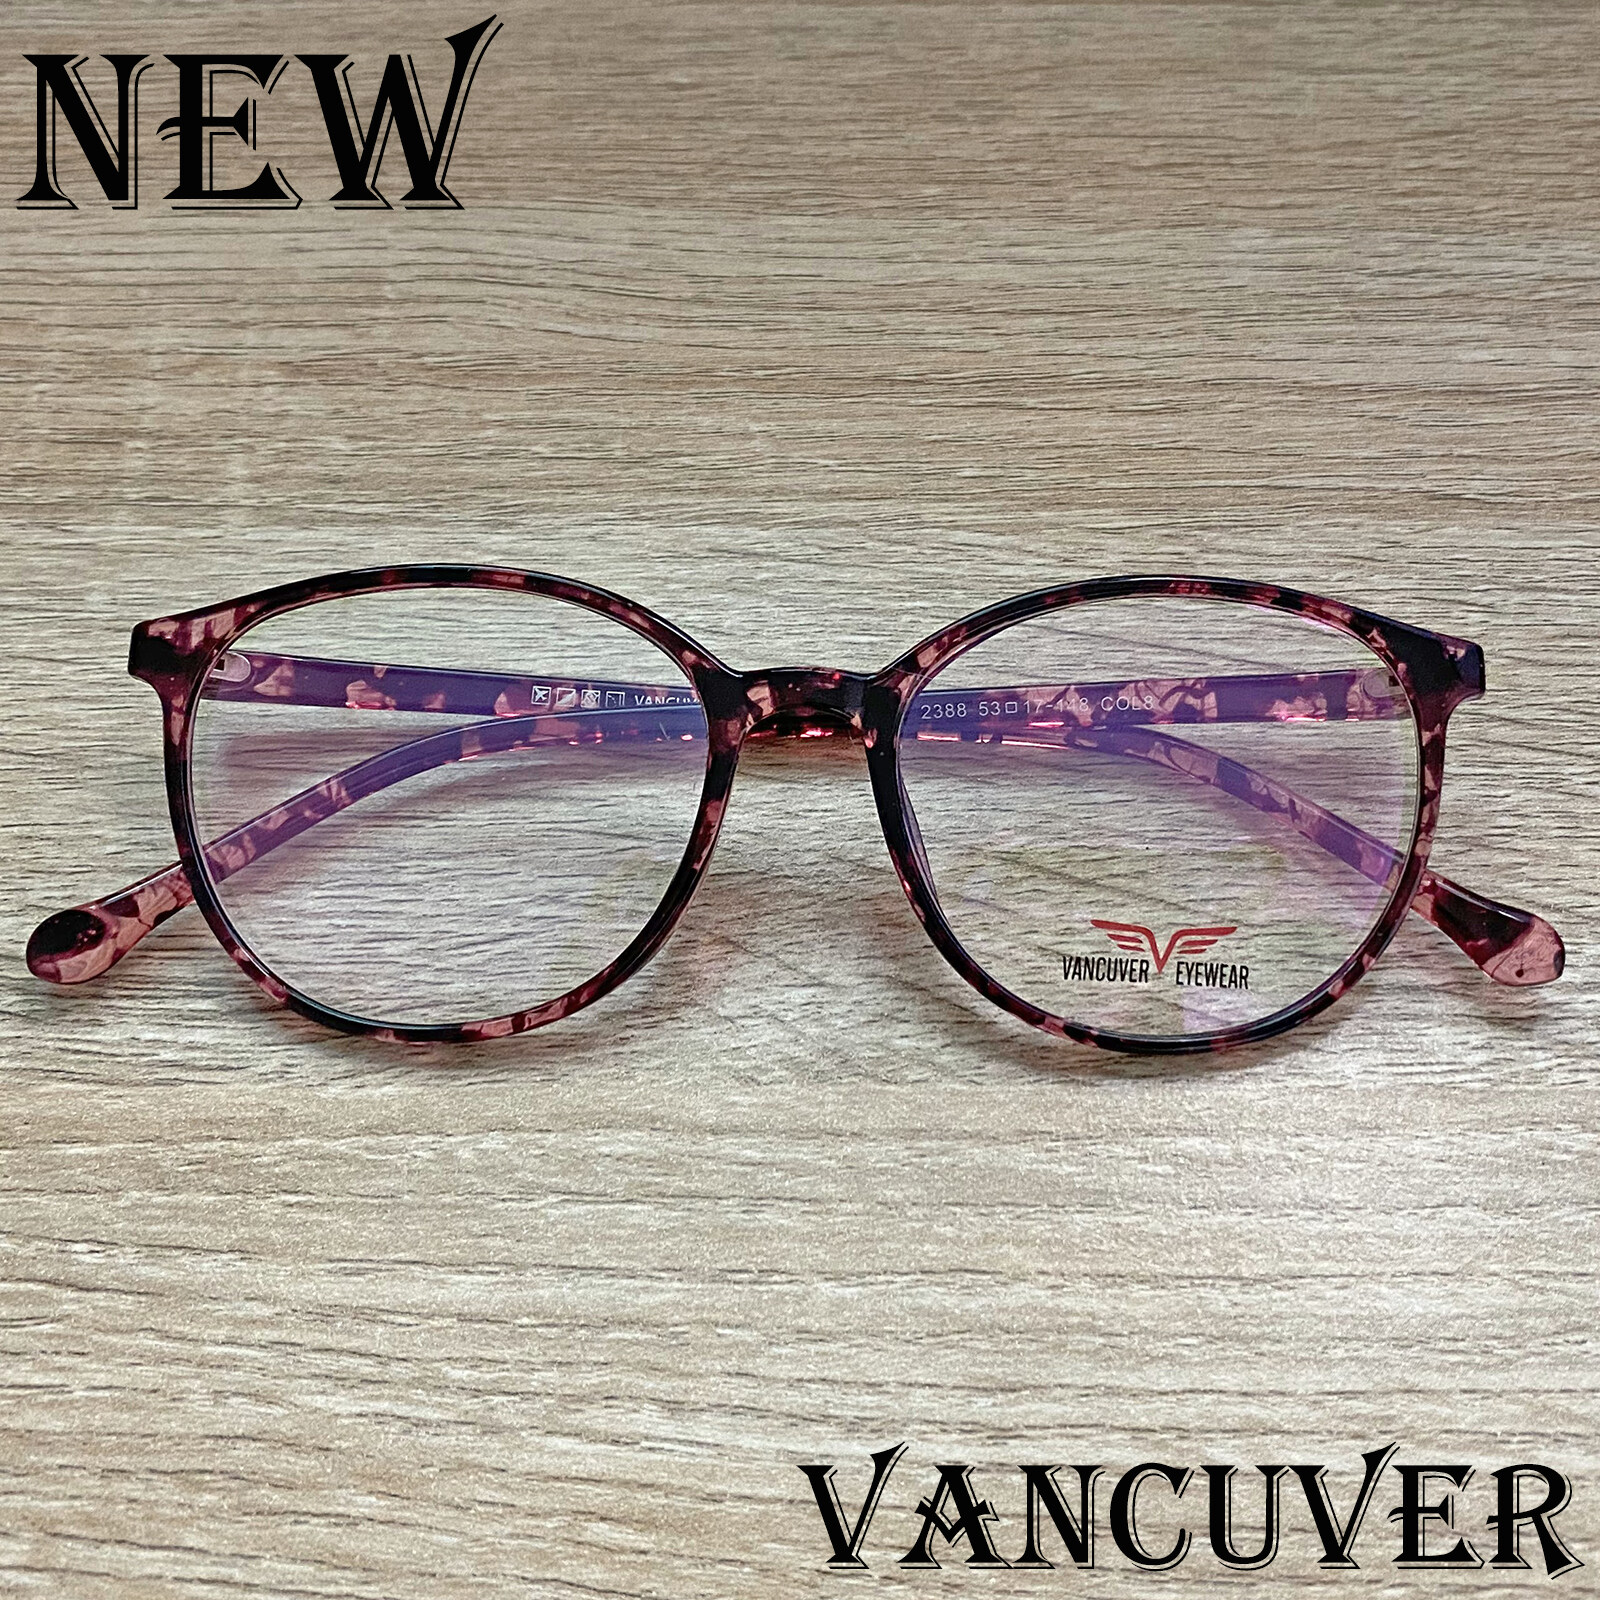 กรอบแว่นตา สำหรับตัดเลนส์ แว่นตา ชาย หญิง Fashion รุ่น Vancuver 2388 สีดำฃายกละ กรอบเต็ม ทรงรี ขาข้อต่อ วัสดุ พลาสติก พีซี เกรด A รับตัดเลนส์ทุกชนิด